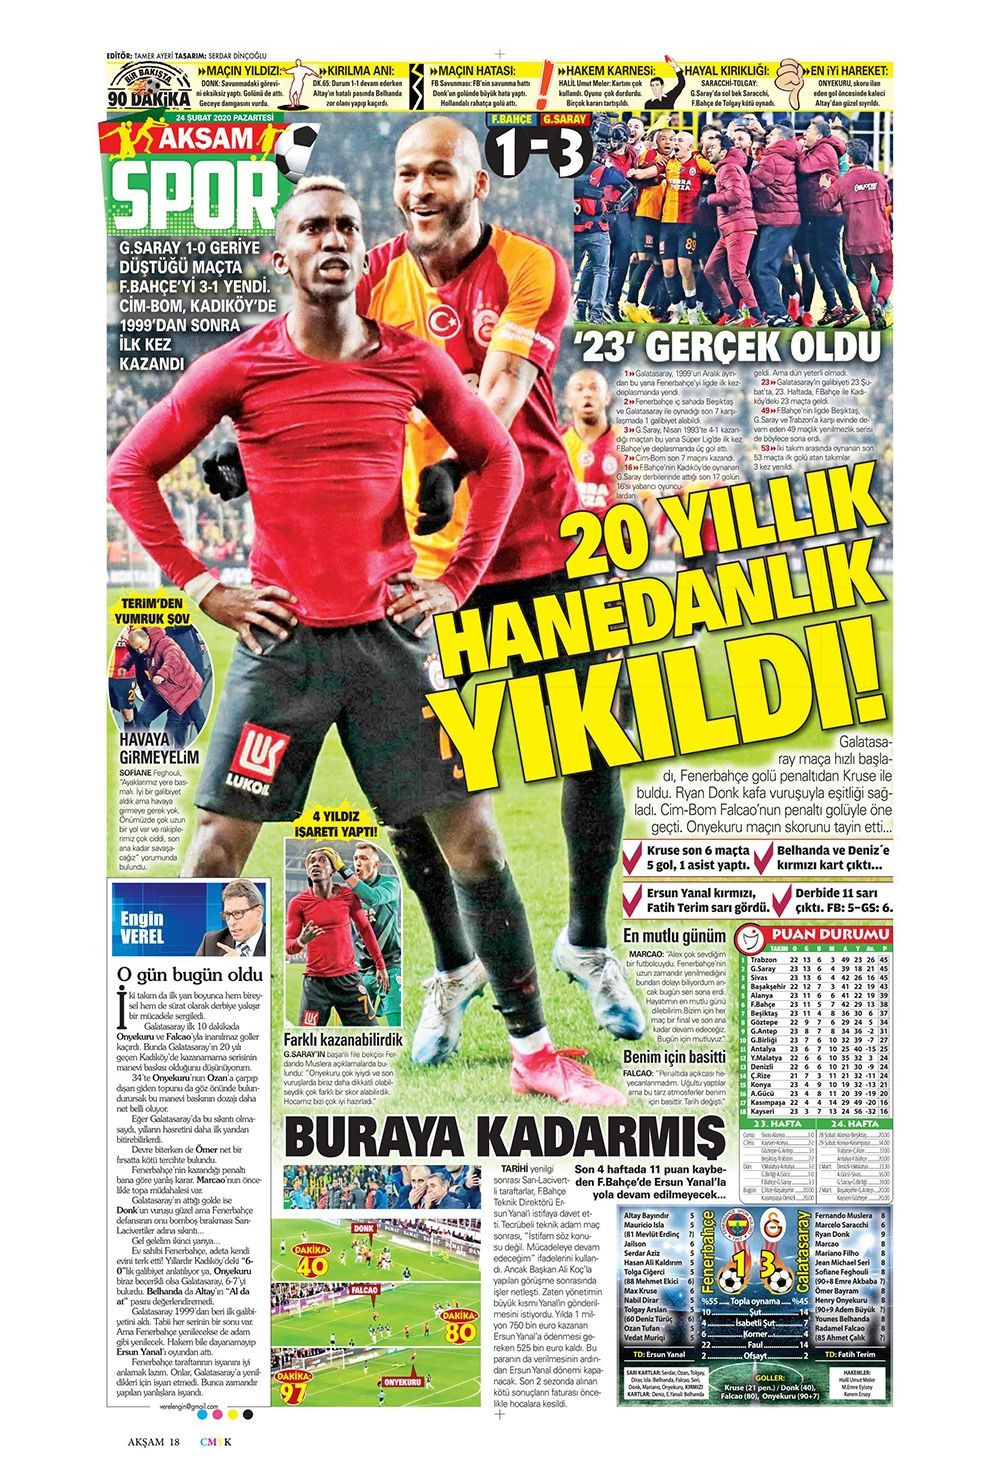 Fenerbahçe Galatasaray derbisini hangi gazete nasıl gördü? - Resim: 1